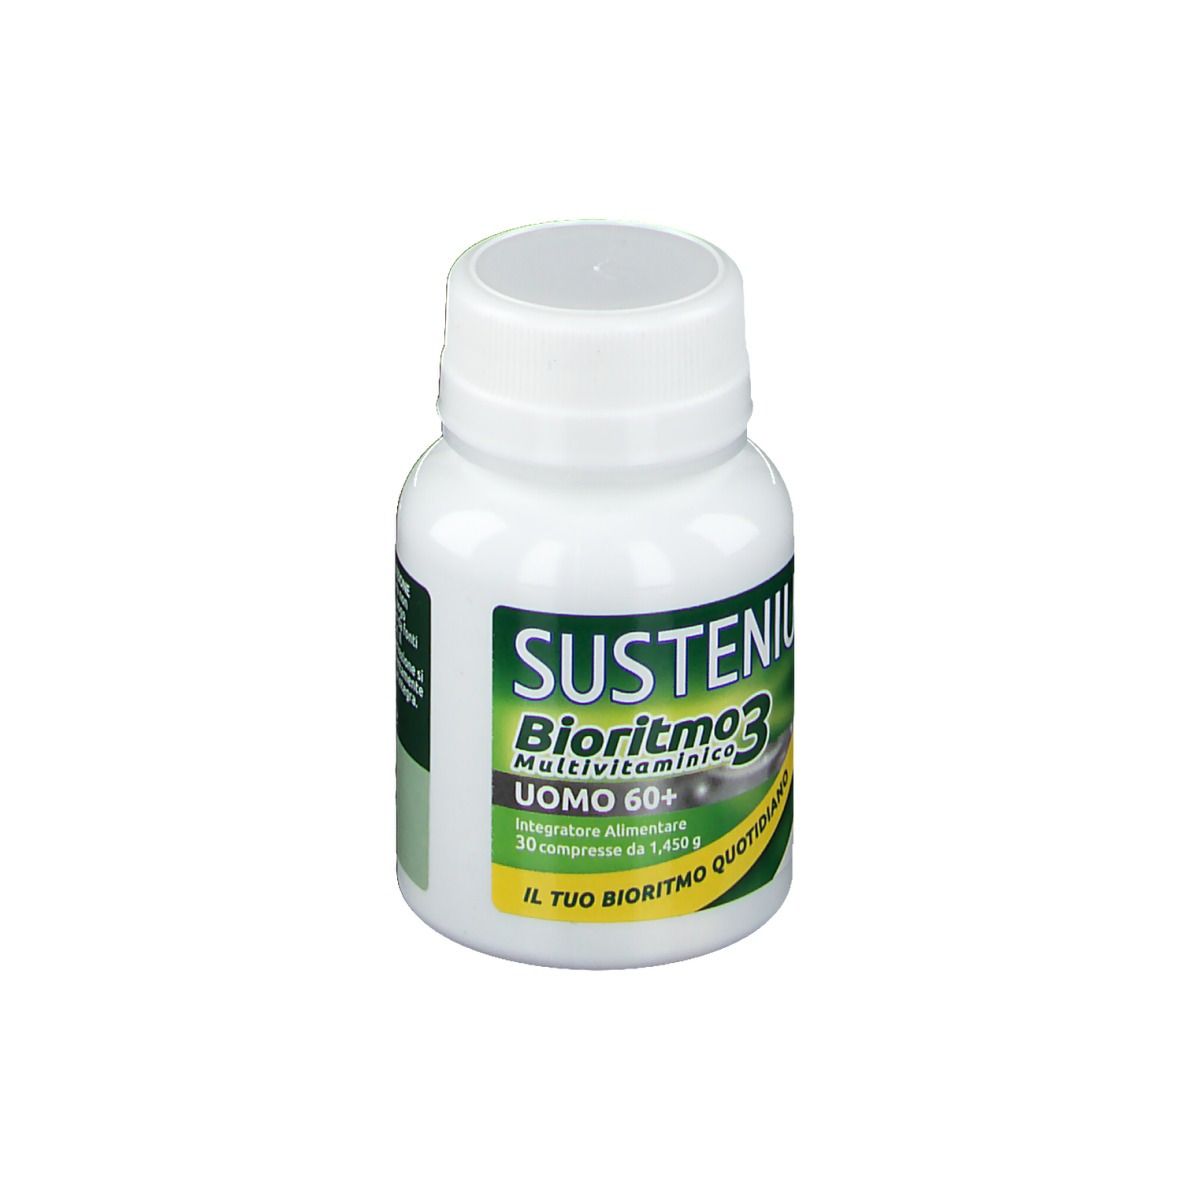 Sustenium Bioritmo3 Uomo 60+